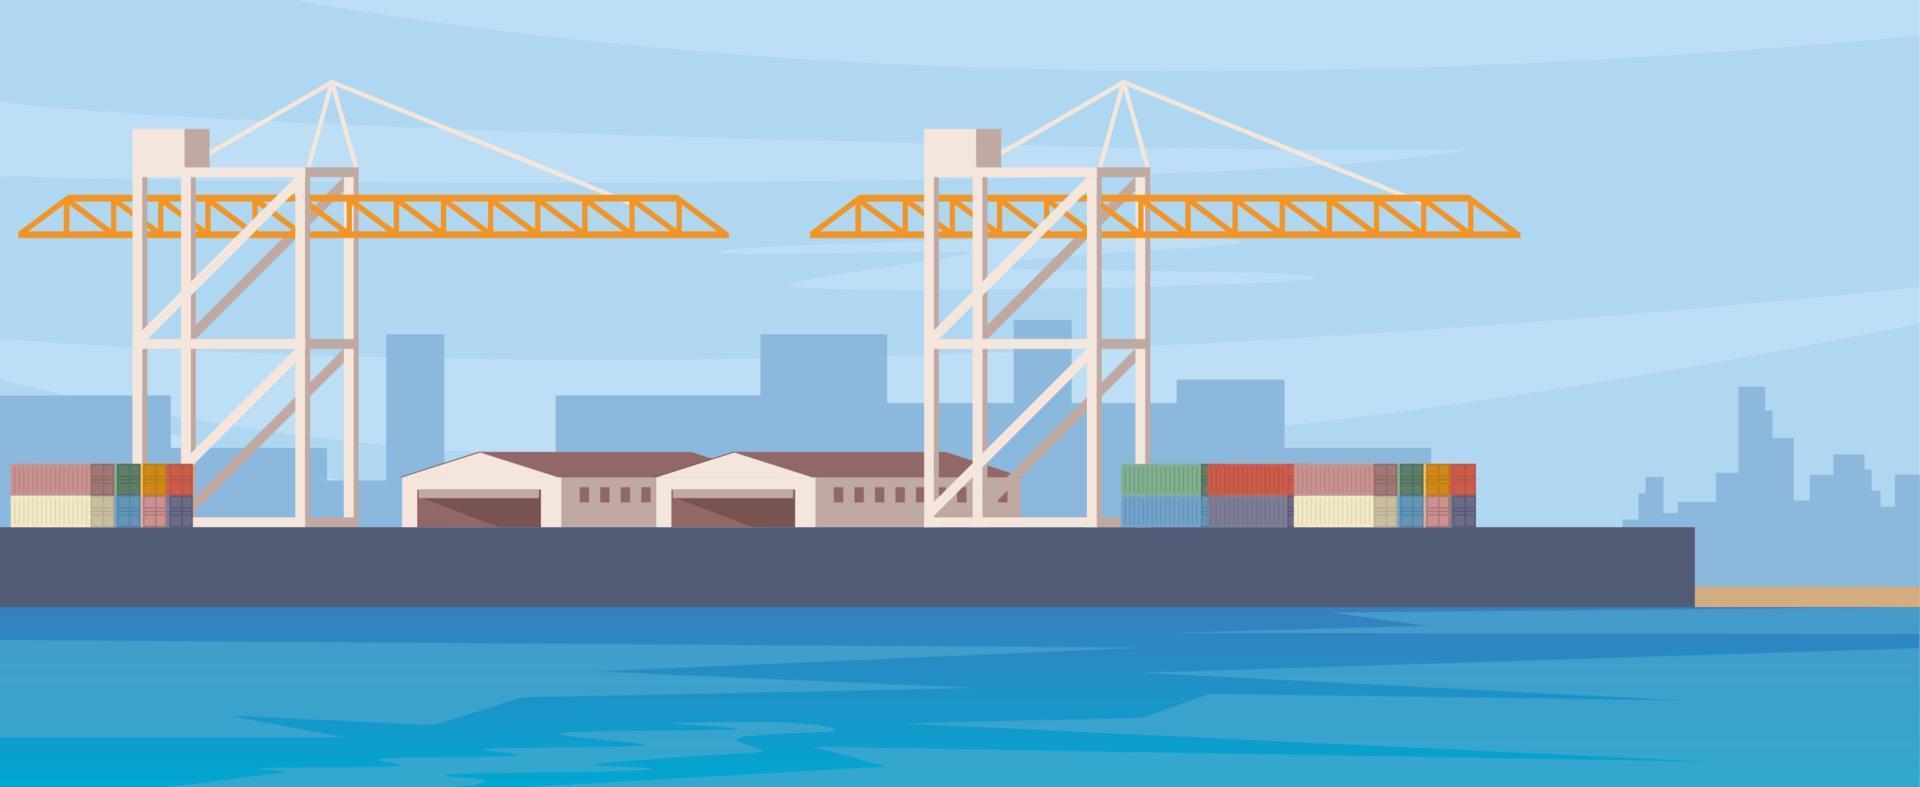 Frachtseehafen mit Kränen, Containern und Lagern. Cargo-Logistik. internationaler Frachttransport und -handel. Containerschiff, Arbeitskräne in der Werft. Vektor-Illustration. vektor